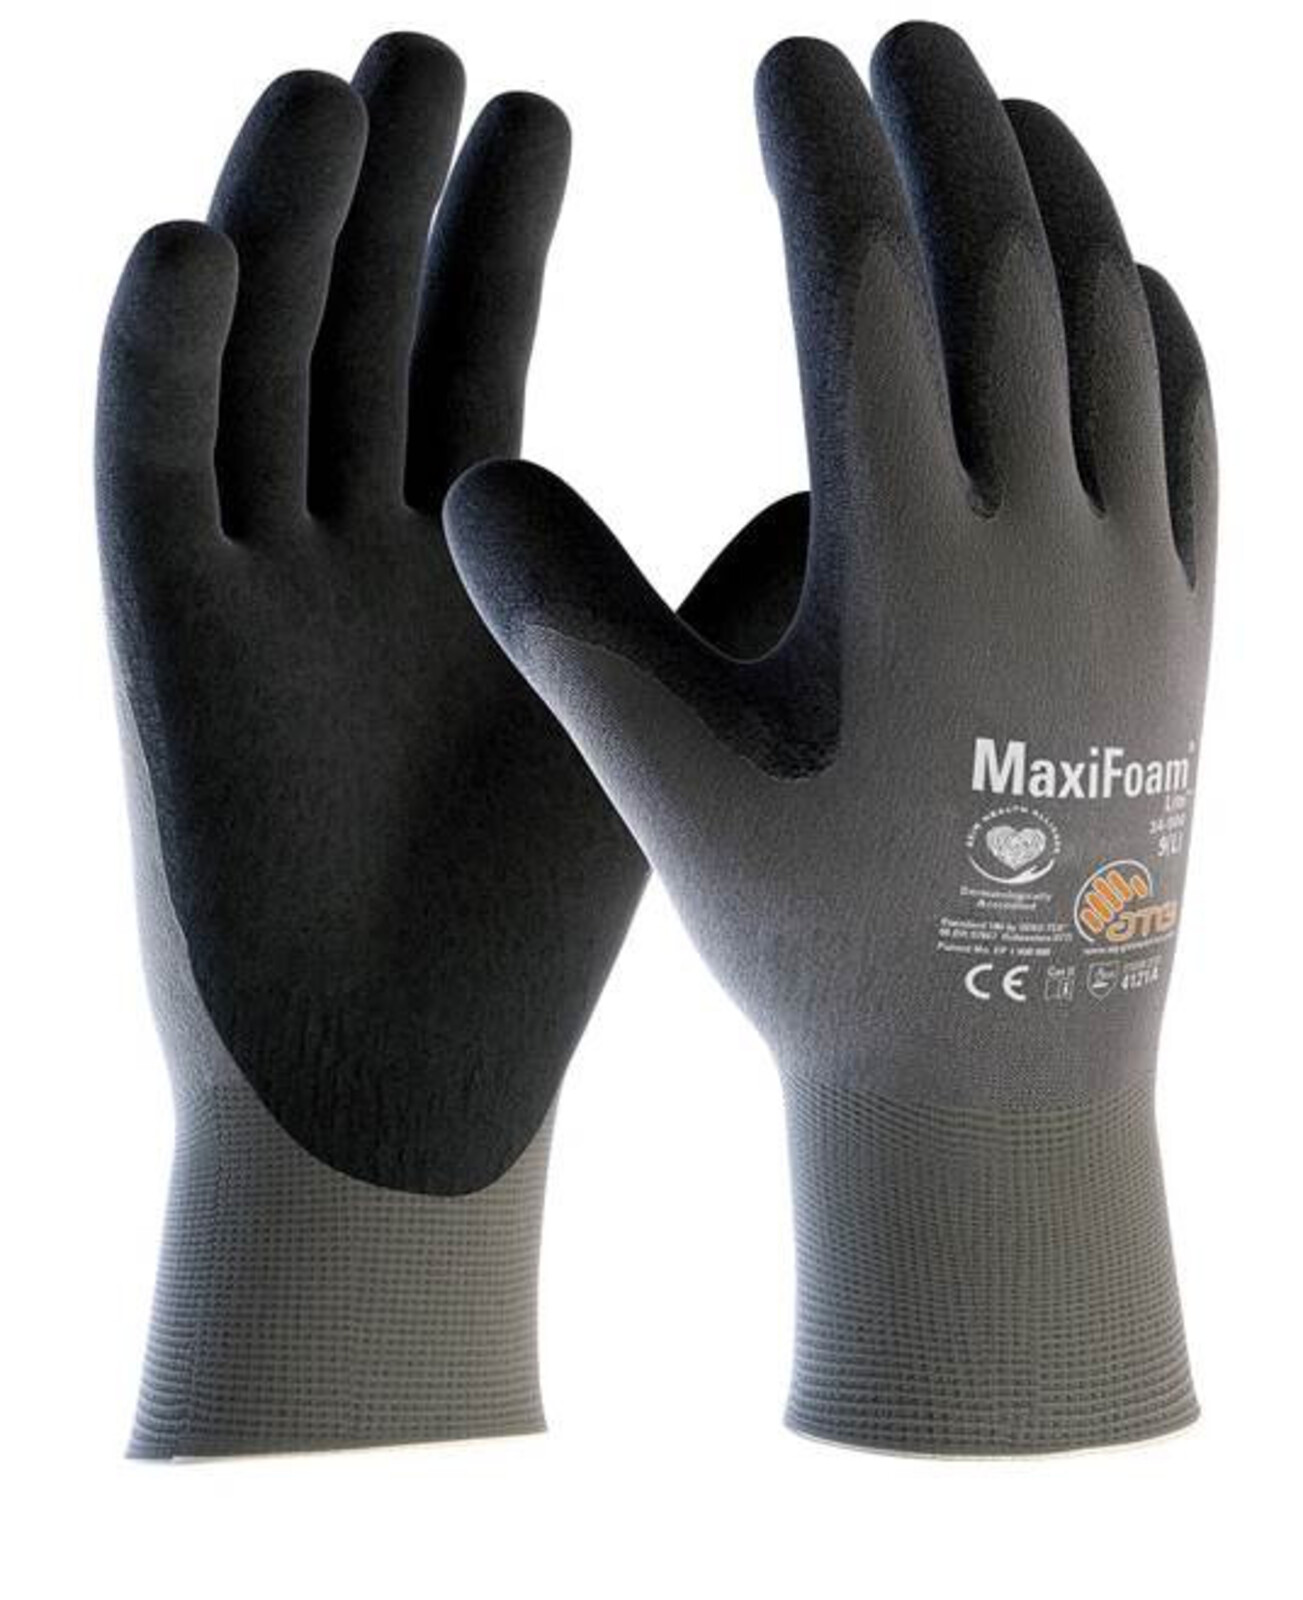 Pracovné rukavice ATG MaxiFoam LITE 34-900 (12 párov) - veľkosť: 11/XXL, farba: sivá